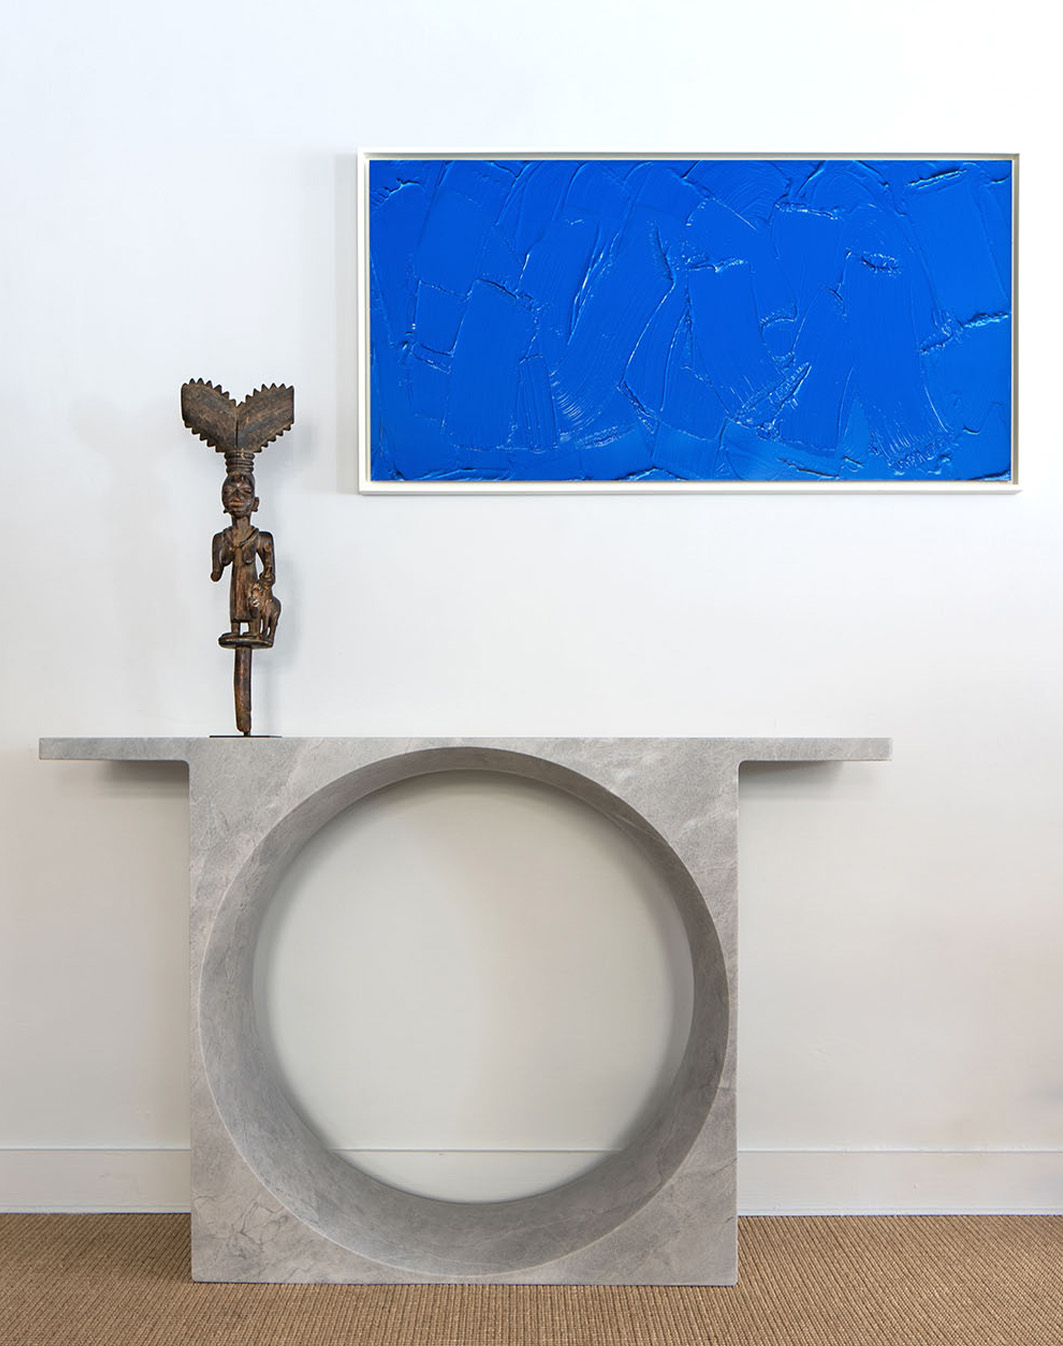 Gino Sarfatti - Lucas Ratton x kamel mennour x Galerie kreo in Saint-Tropez